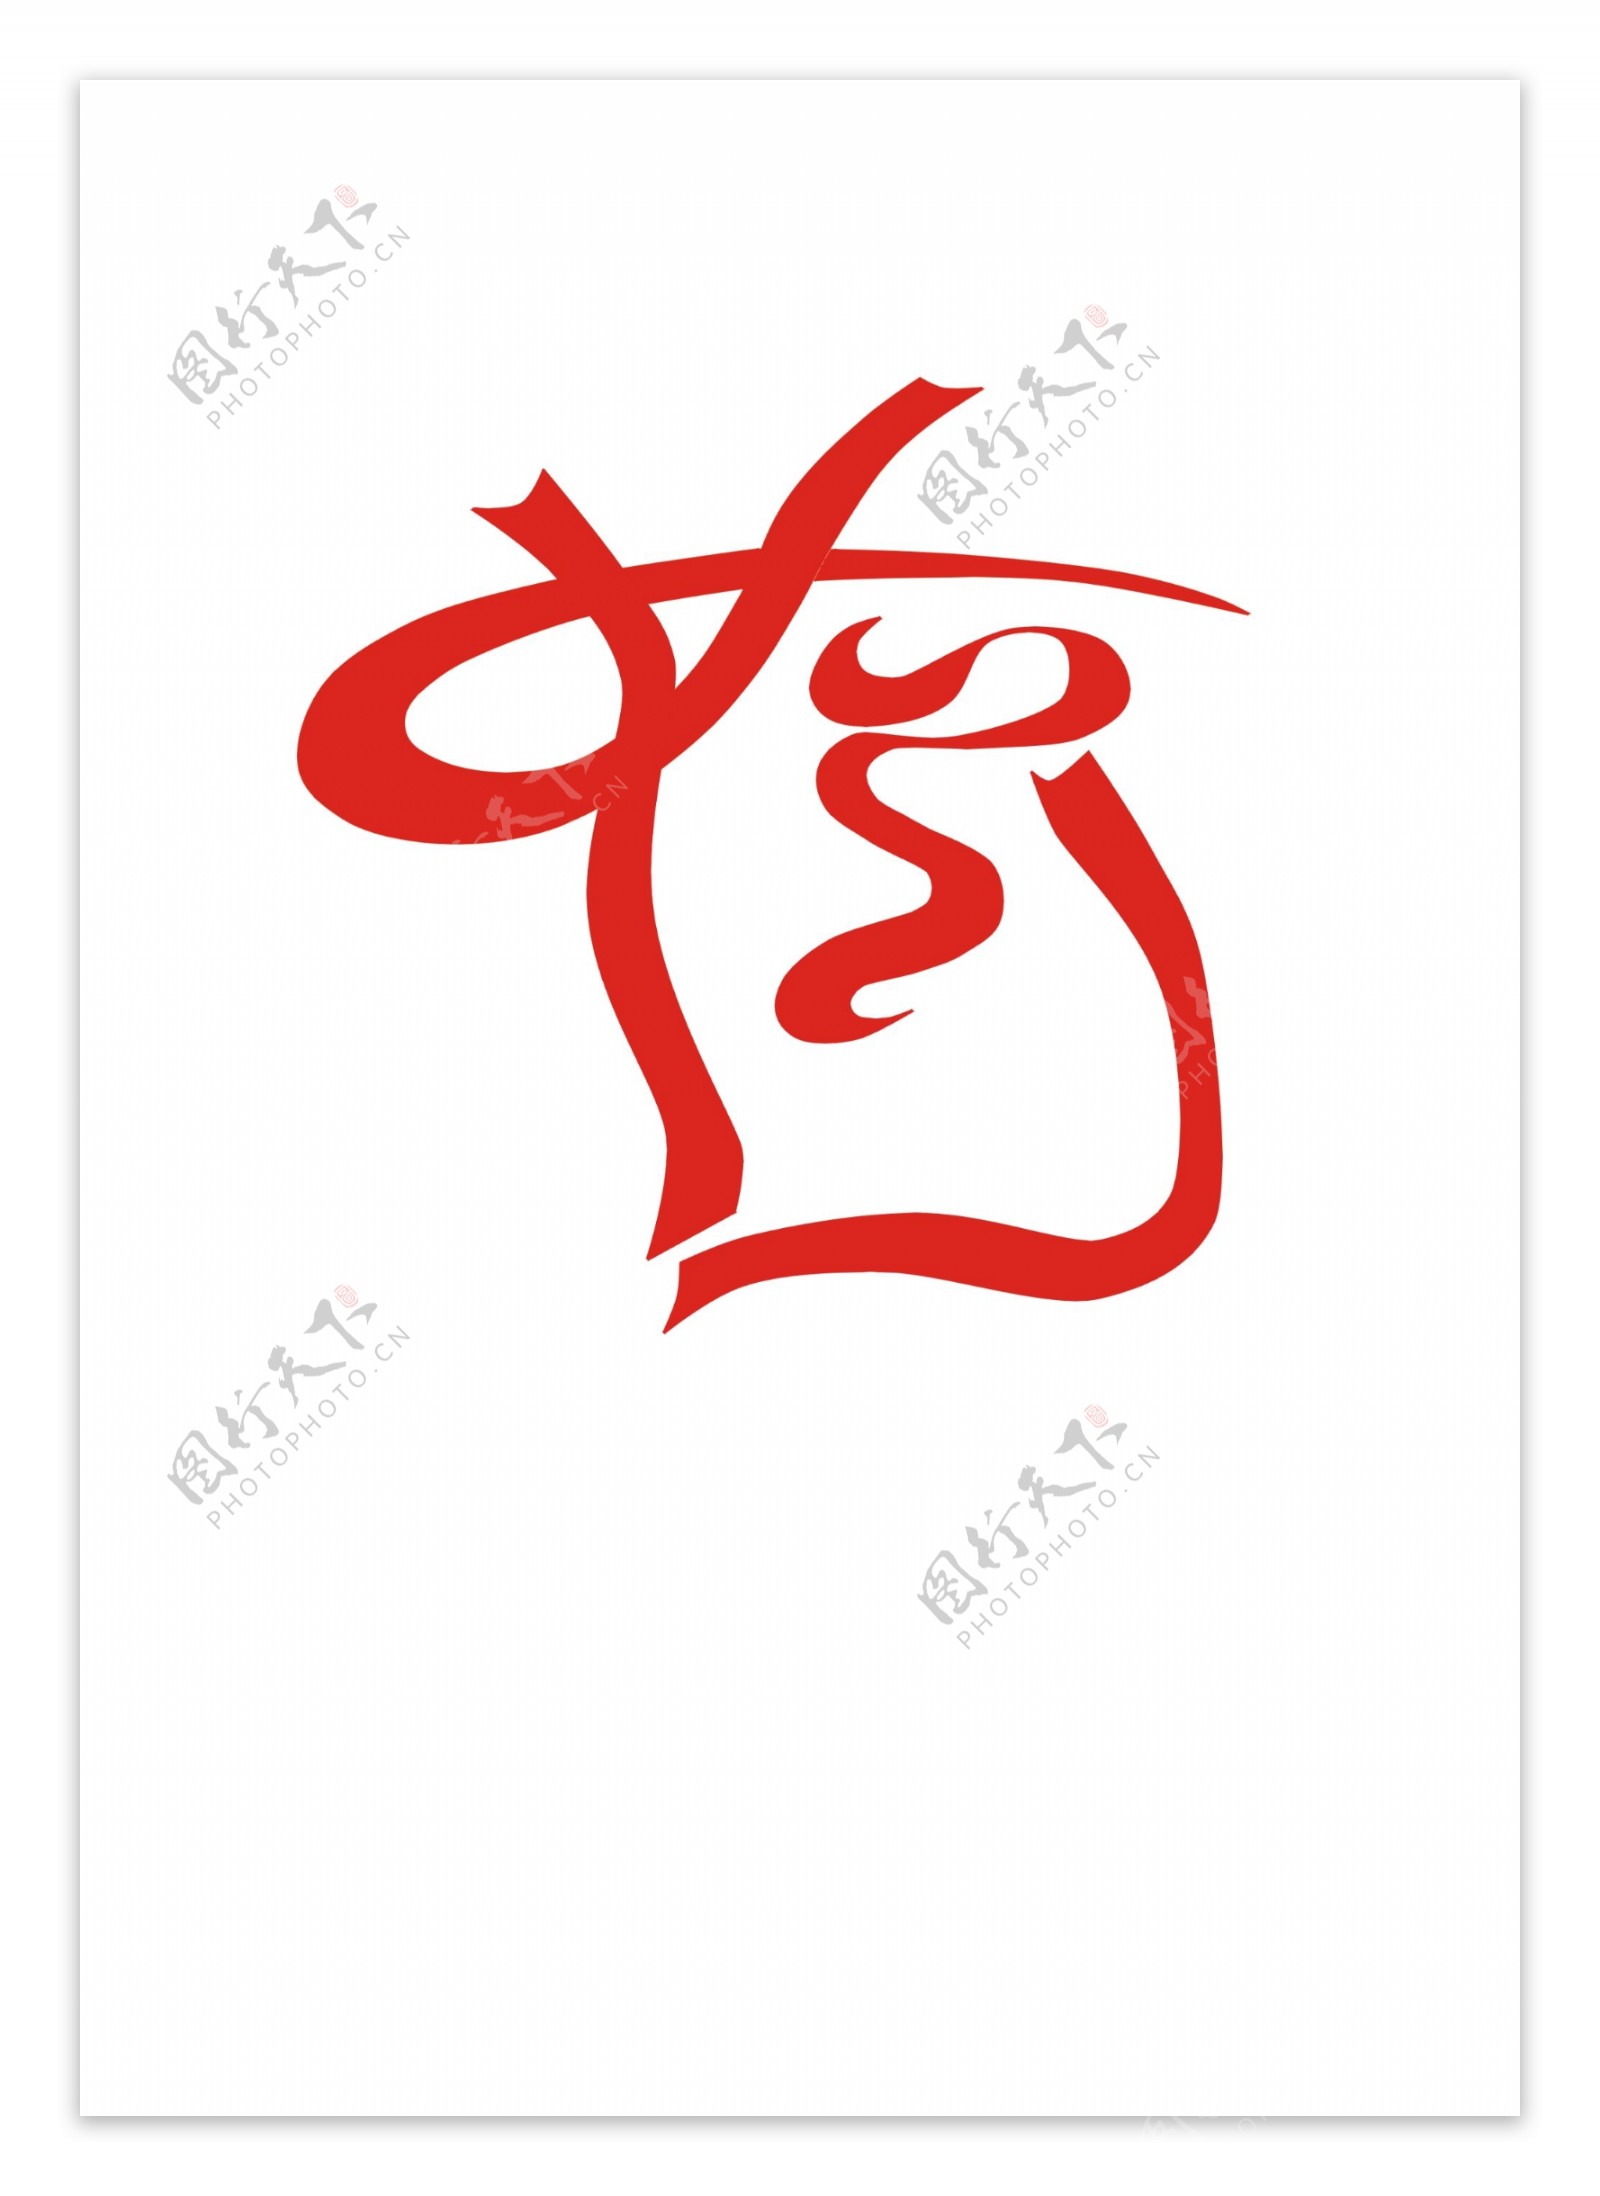 中国荷兰联合企业logo标志设计